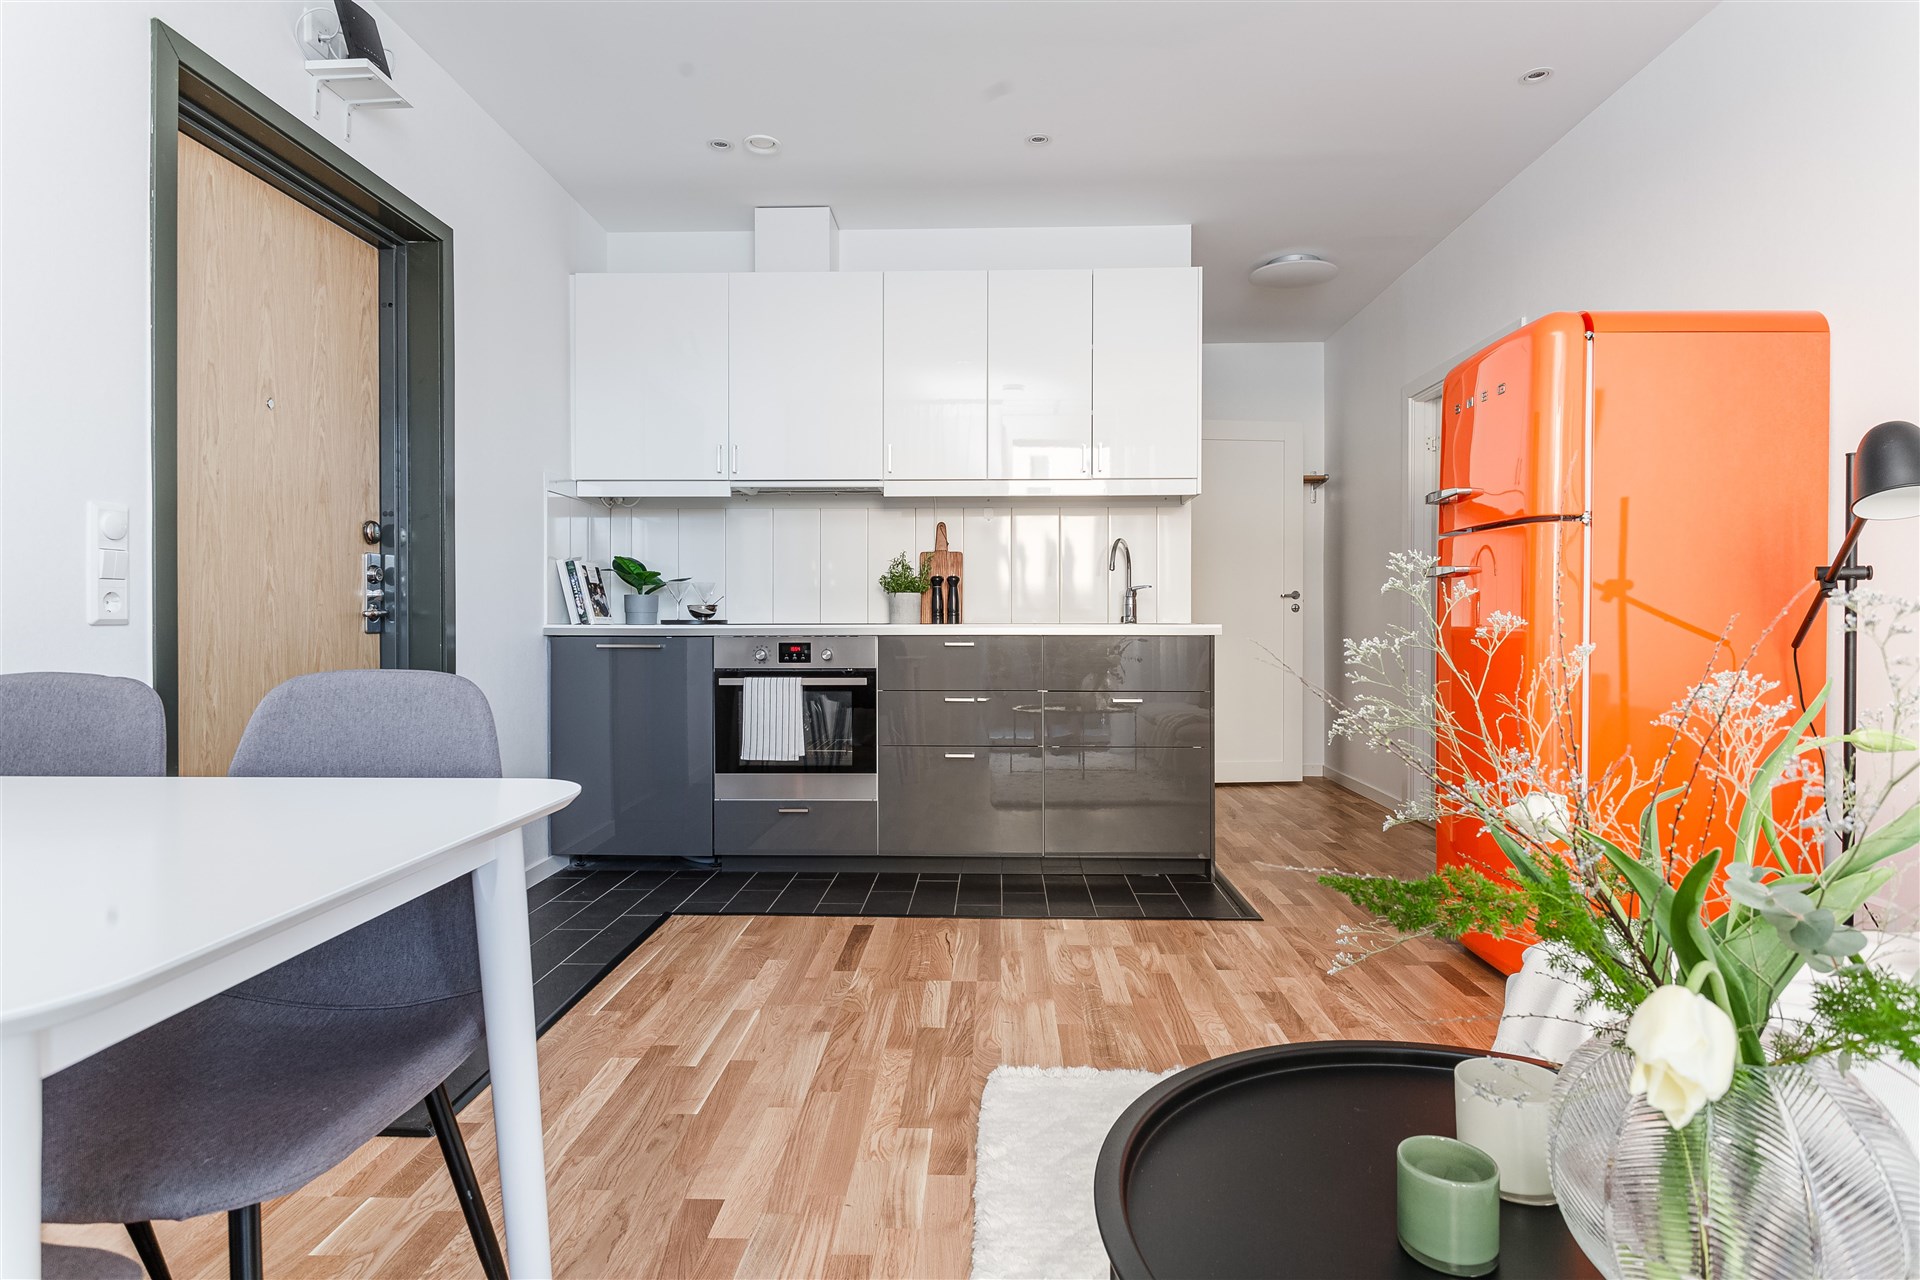 salon avec cuisine ouverte réfrigérateur SMEG orange décoration design